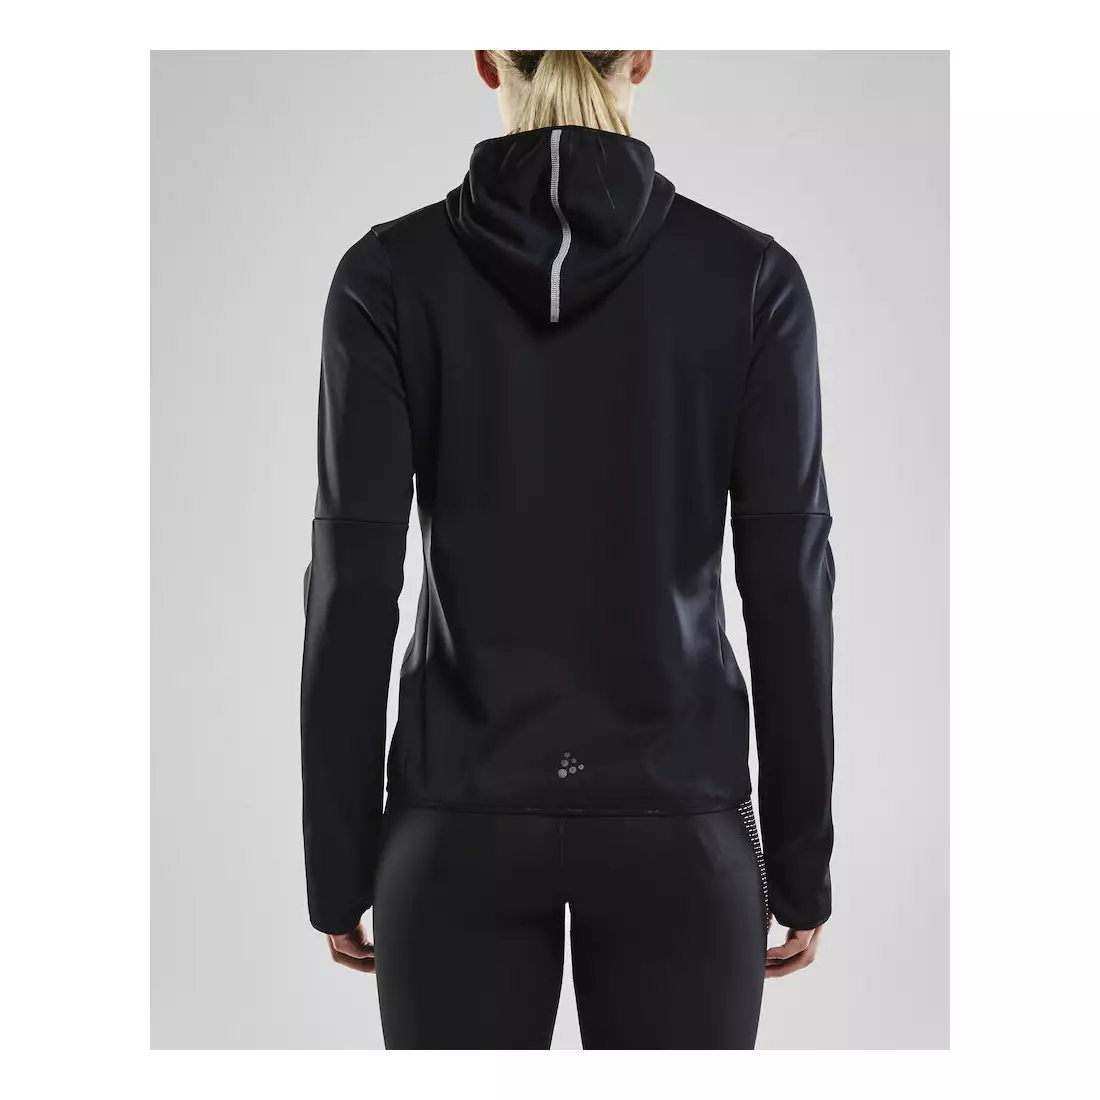 CRAFT EAZE warmes Sport-Sweatshirt für Damen mit Kapuze, schwarz 1906033-999000